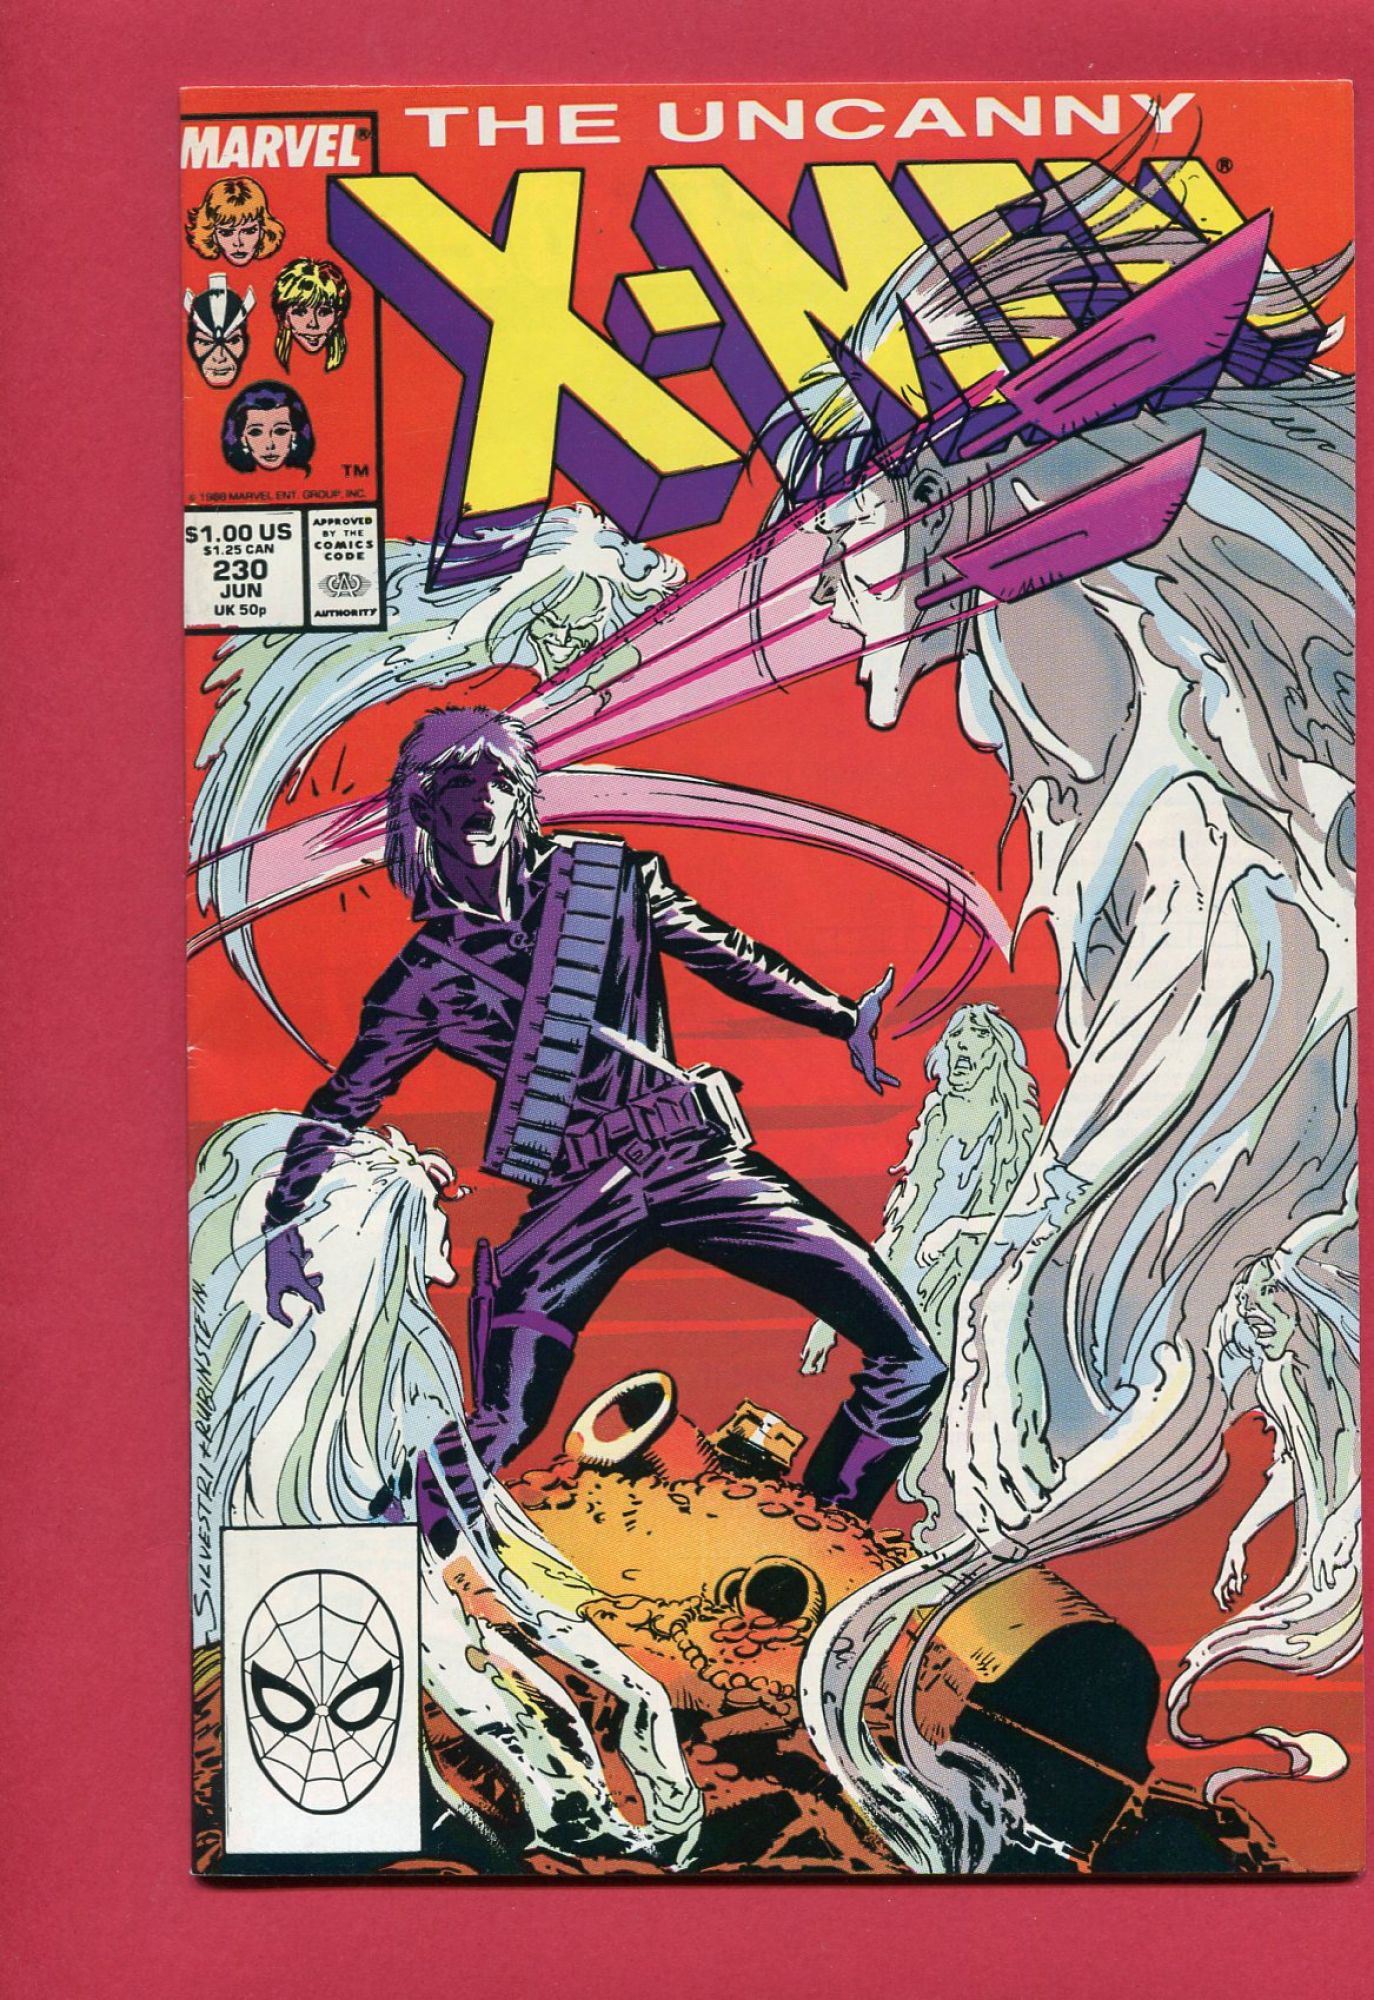 Uncanny X-Men #230, Jun 1988, 8.5 VF+